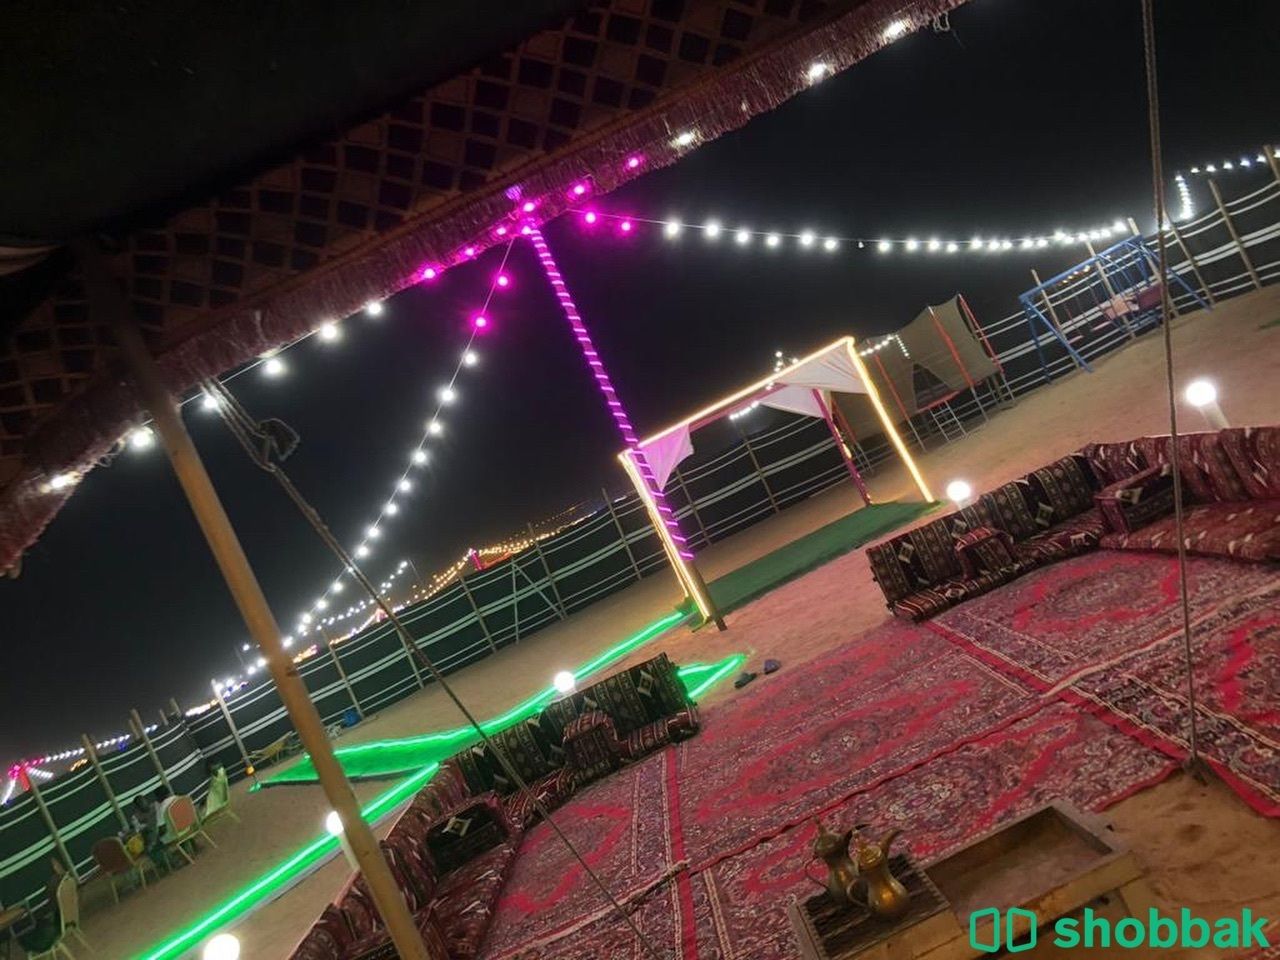 مخيم الحور (كبري بريمان طريق هدى الشام ) Shobbak Saudi Arabia